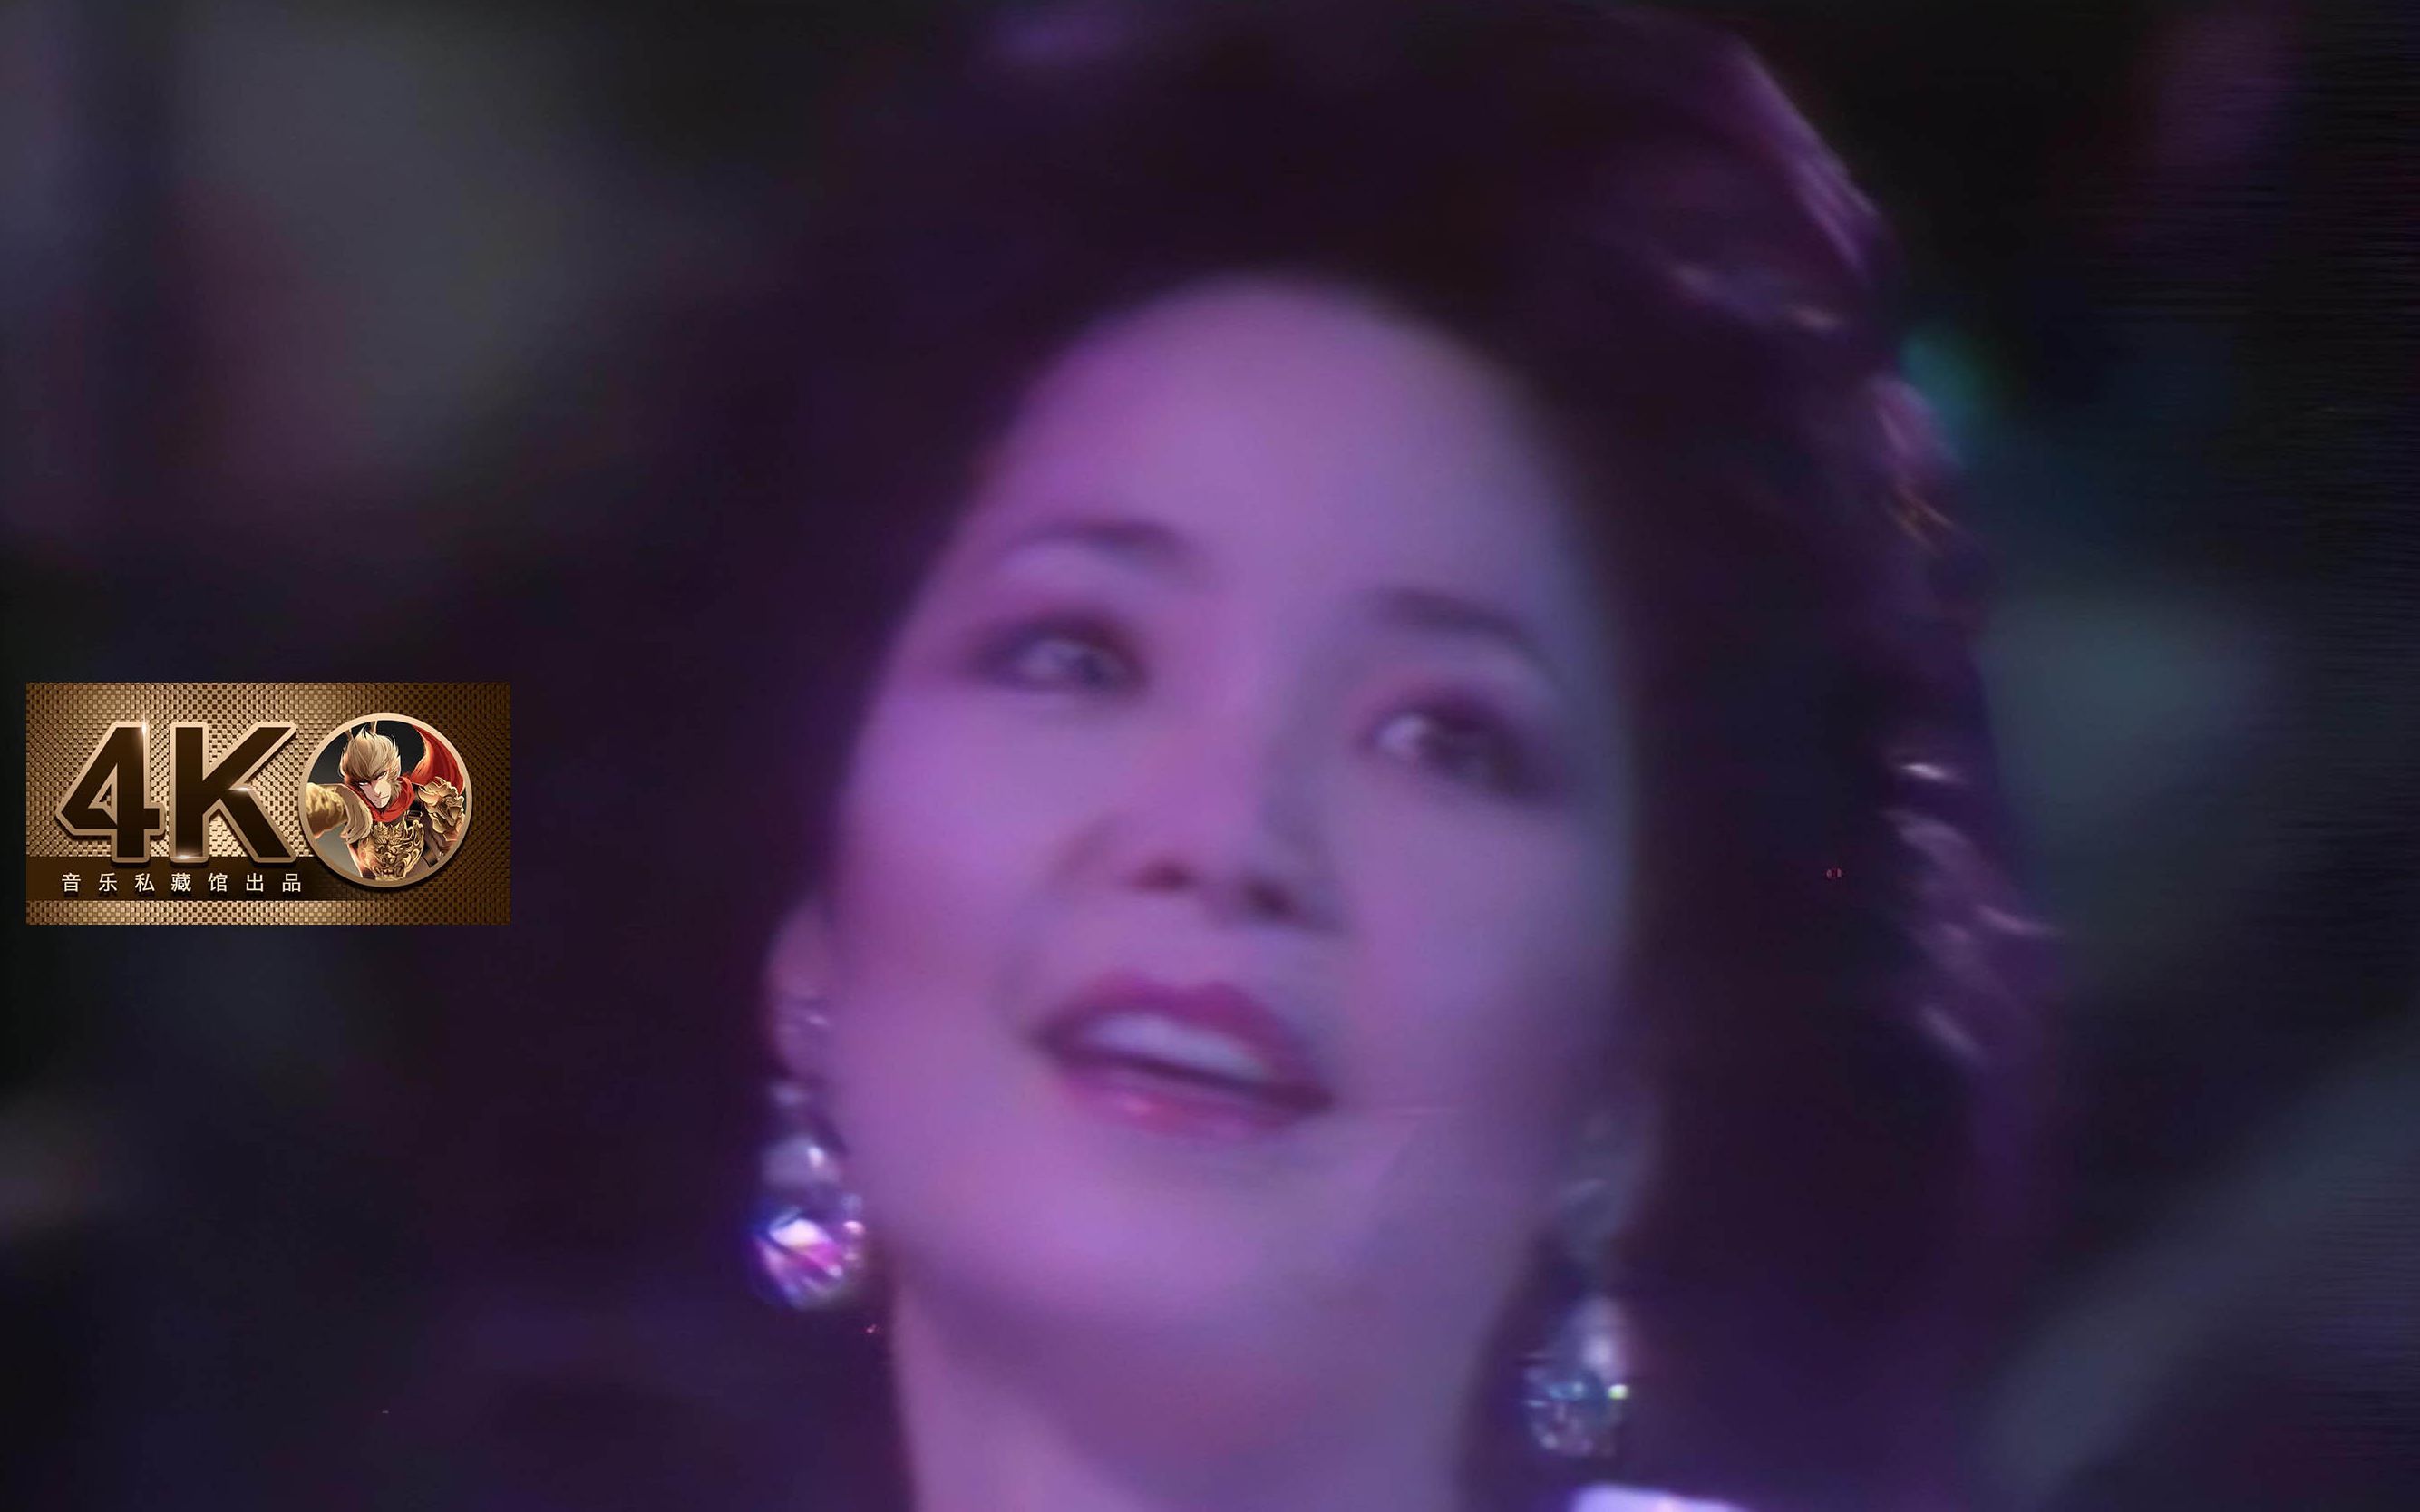 邓丽君1985年NHK演唱会歌曲《何日君再来》高音质现场版_哔哩哔哩 (゜-゜)つロ 干杯~-bilibili